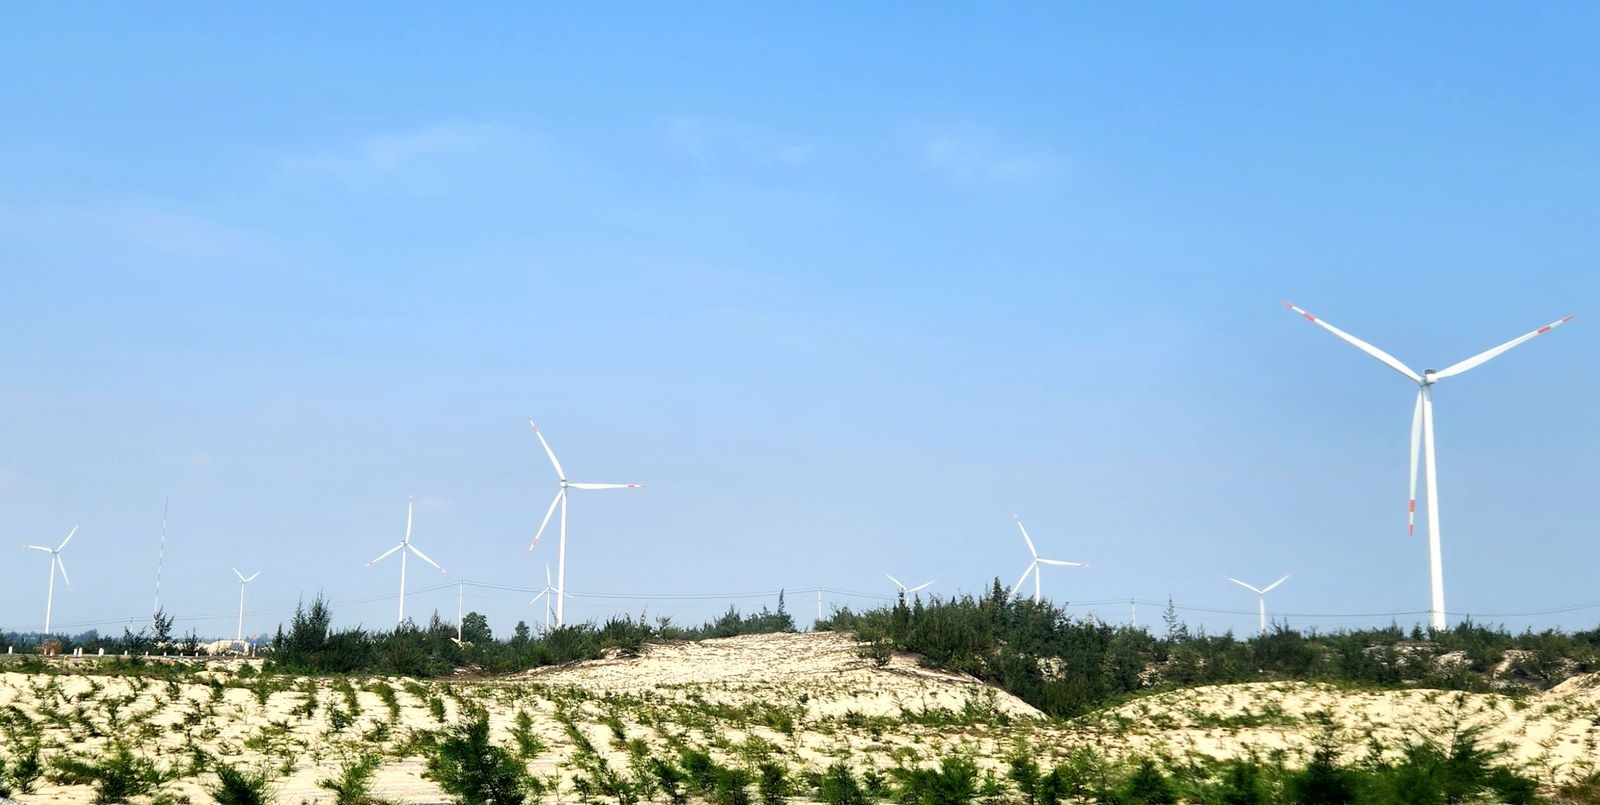 Cụm trang trại điện gió B&T được đầu tư xây dựng tại huyện Quảng Ninh và Lệ Thủy (tỉnh Quảng Bình). Ảnh: Lê Phi Long